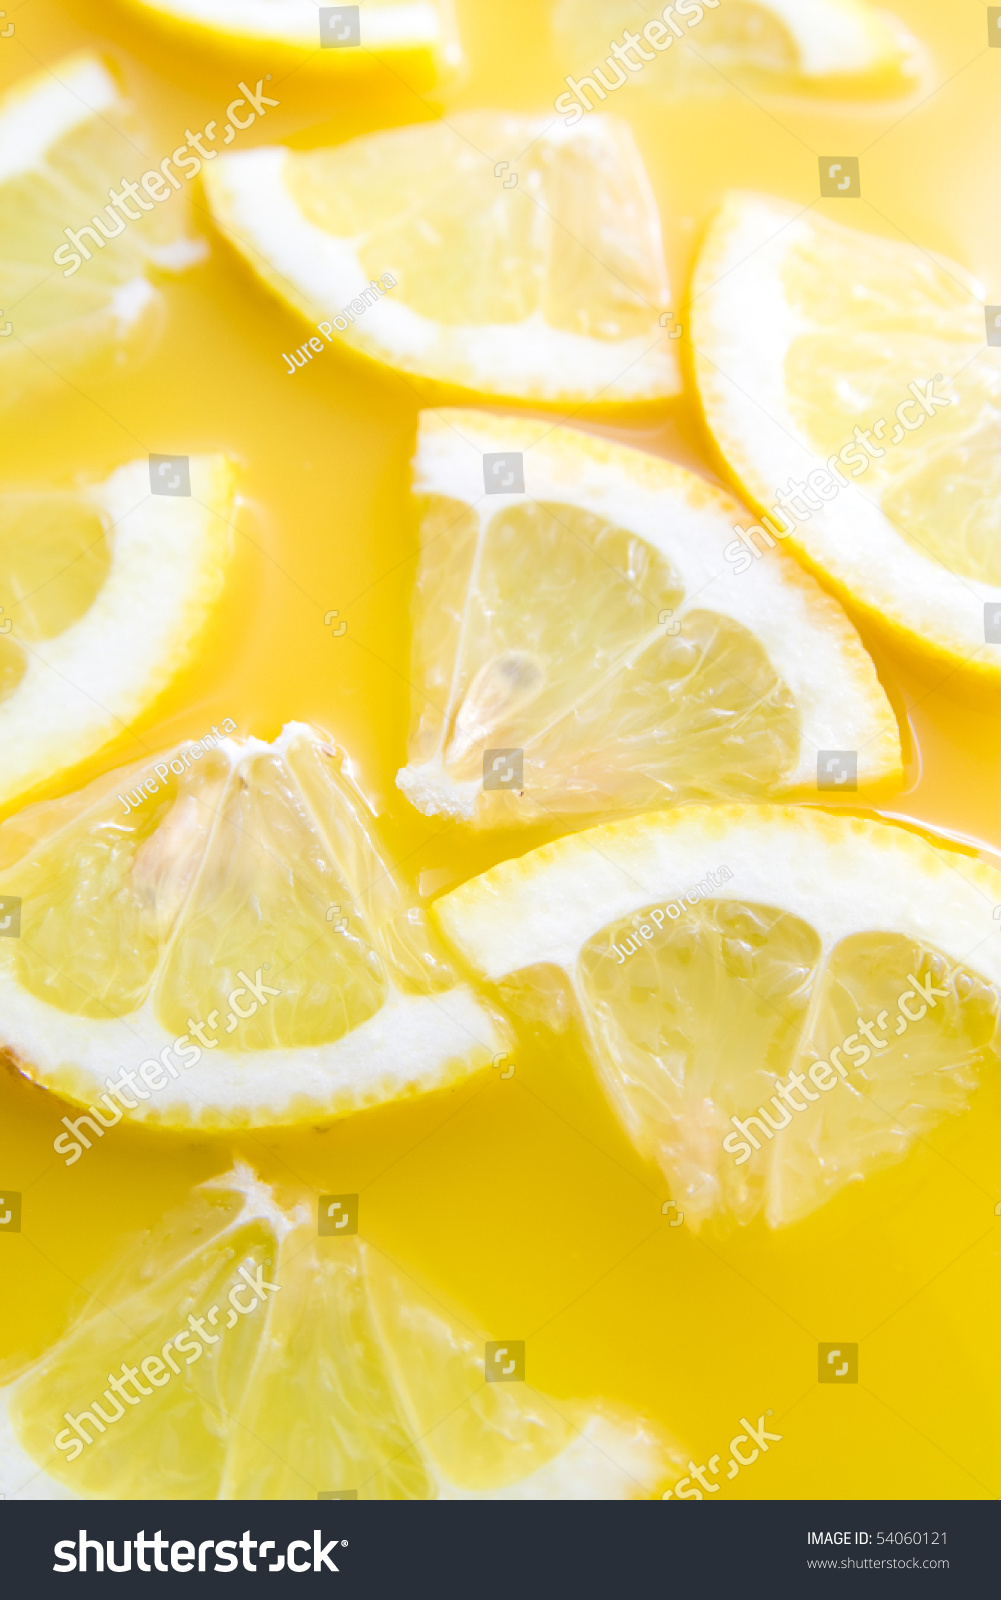 Sliced tasty lemons representing healthy lemon juice - lemonade. #54060121